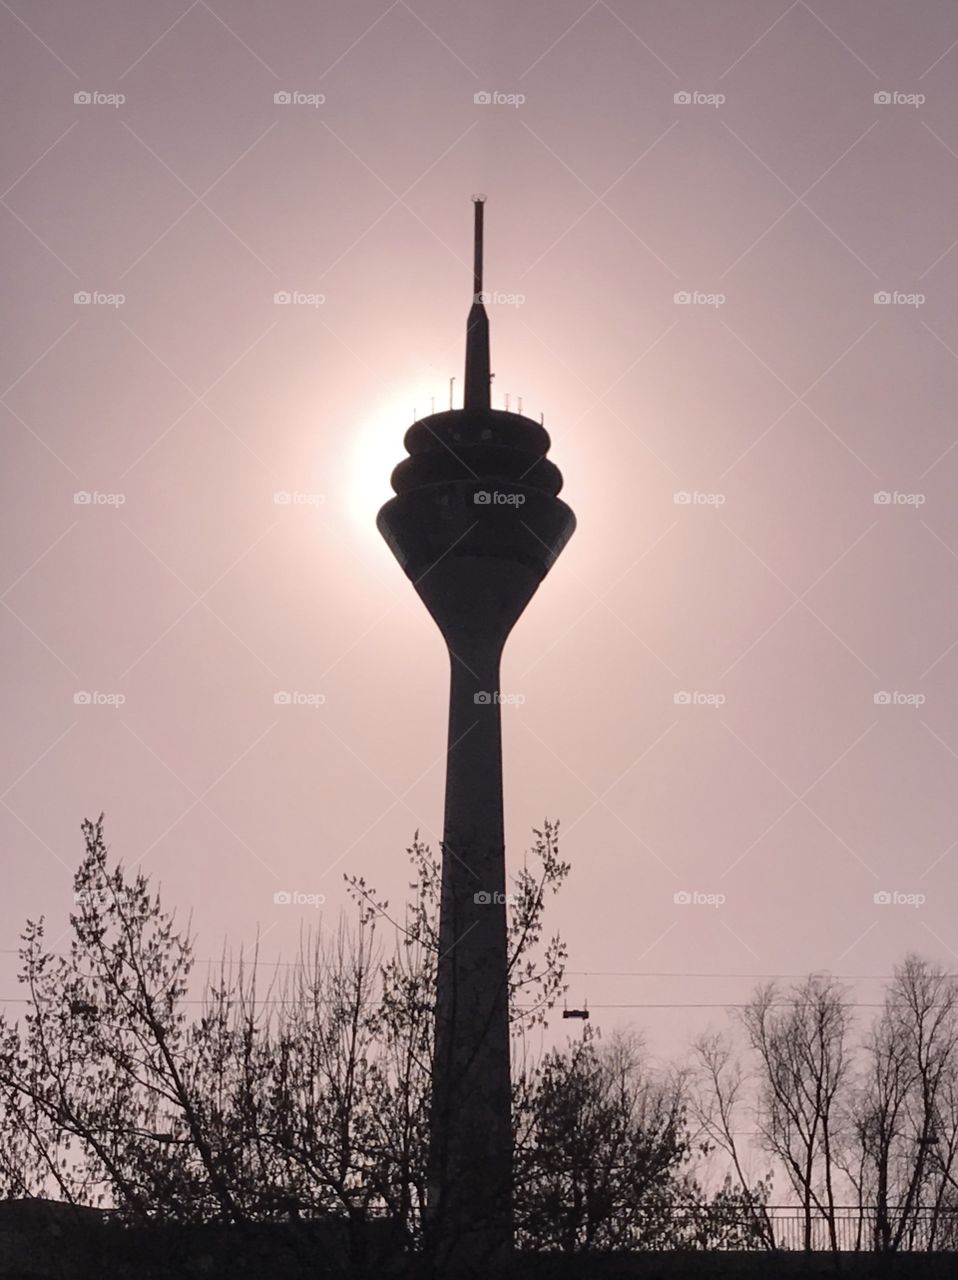 Rhein tower - Düsseldorf